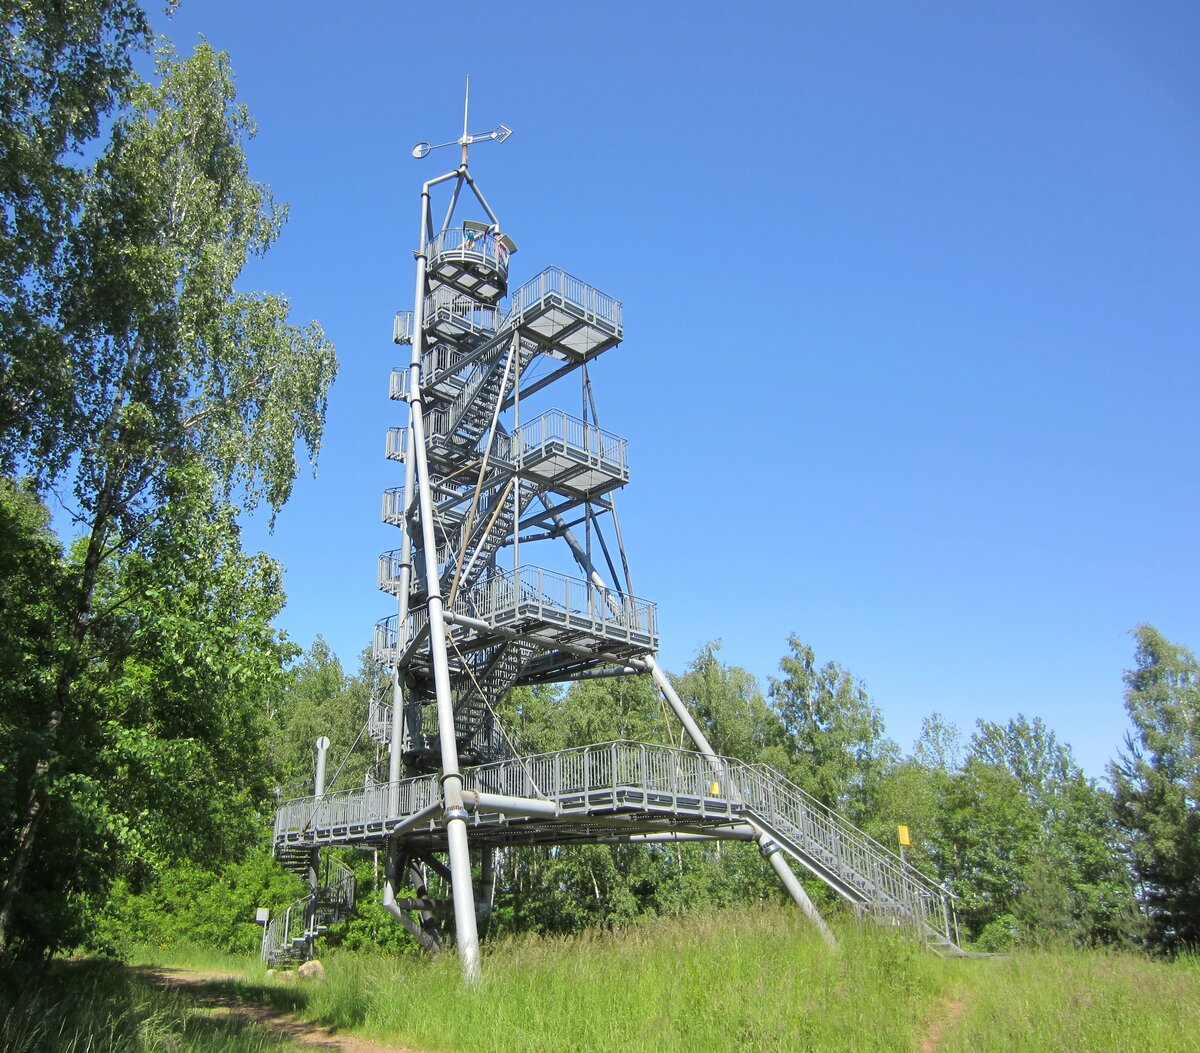 Glck-Auf-Turm bei Oelsnitz im Erzgebirge. Dieser 36m hohe Aussichtsturm wurde 2000 auf einer Bergbauhalde im Stil eines Frderturmes errichtet. Aufnahme vom 04.06.2023.